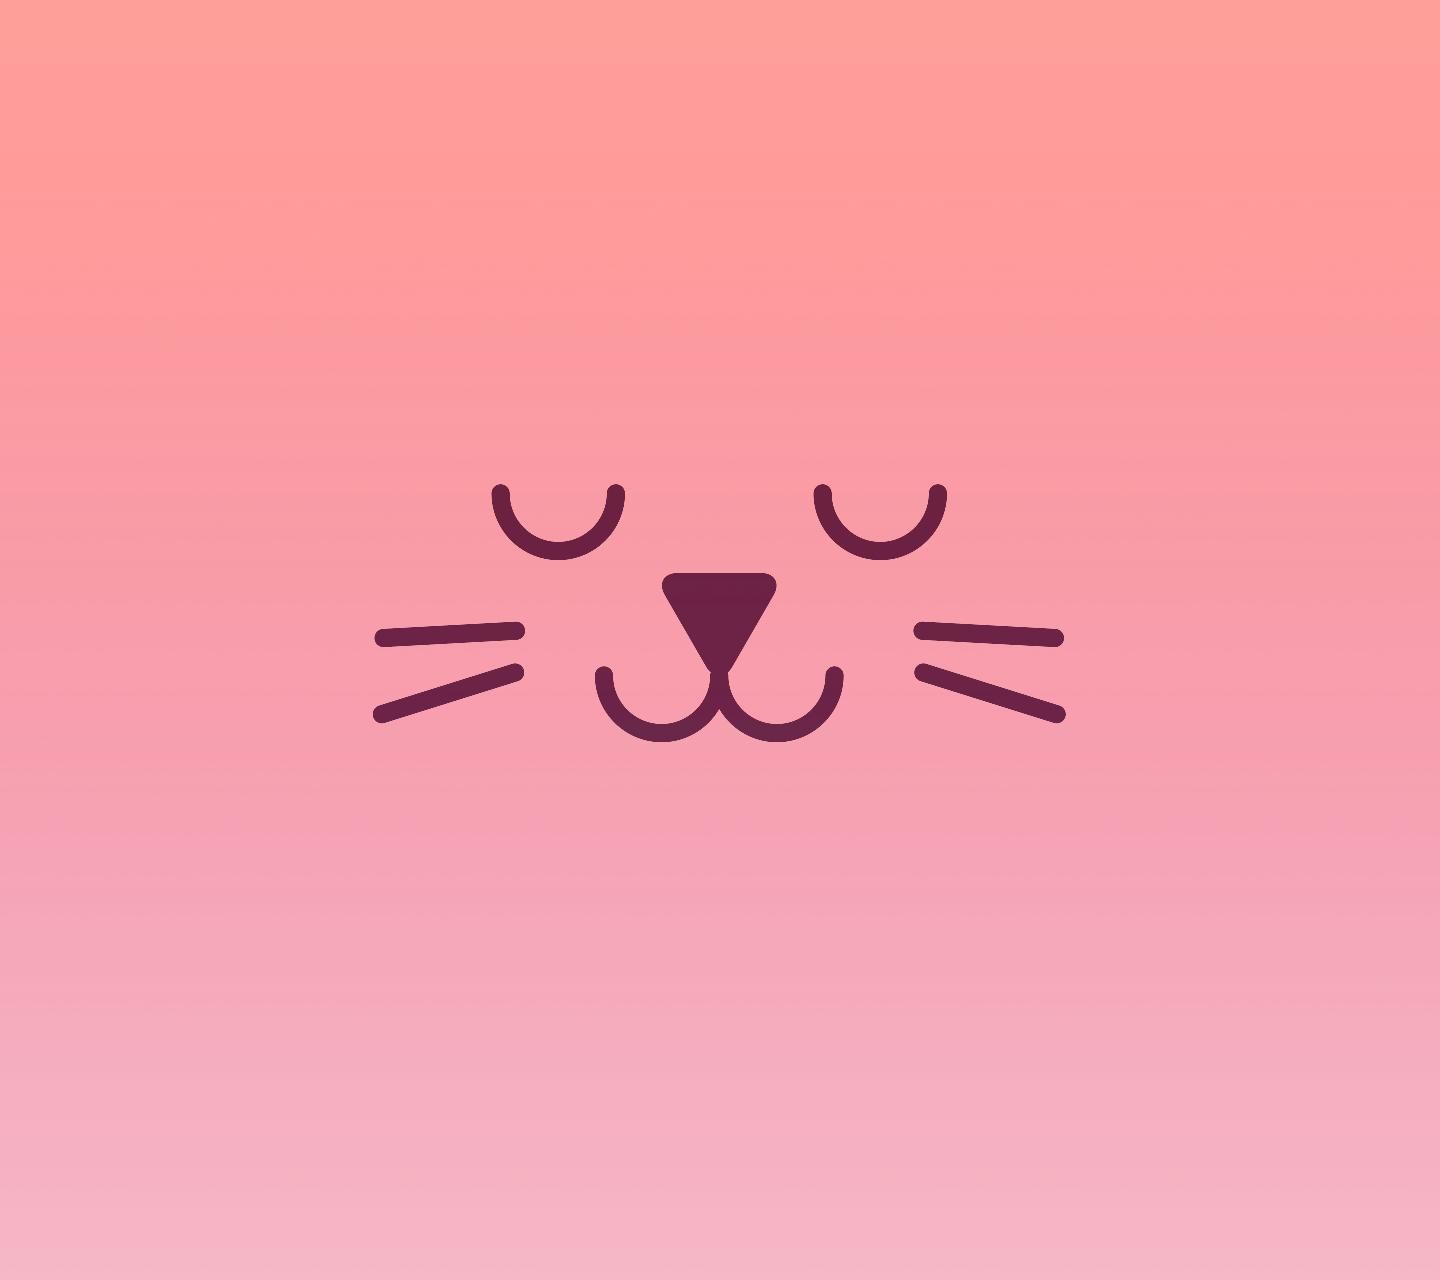 Đang tìm kiếm hình ảnh về mèo màu hồng? Hãy xem hình ảnh này để tìm hiểu về những chú mèo con màu hồng siêu dễ thương. Những chú mèo này sẽ chắc chắn làm cho bạn cảm thấy ngọt ngào và đáng yêu.